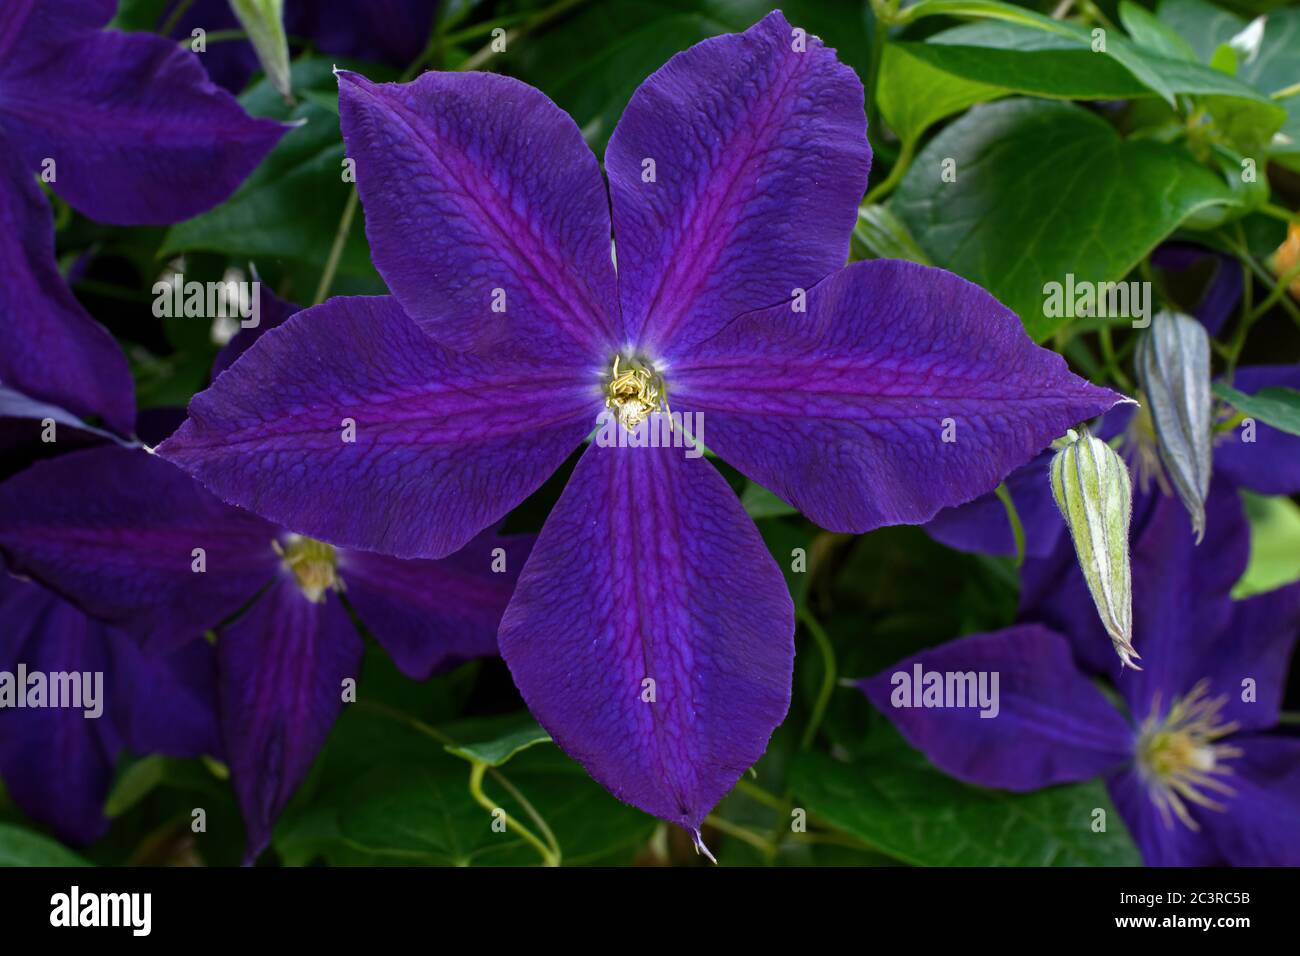 Clematis auf Home Garten Spalier. Es ist eine mehrjährige Kletterpflanze mit großen violett-violetten Blüten. Stockfoto